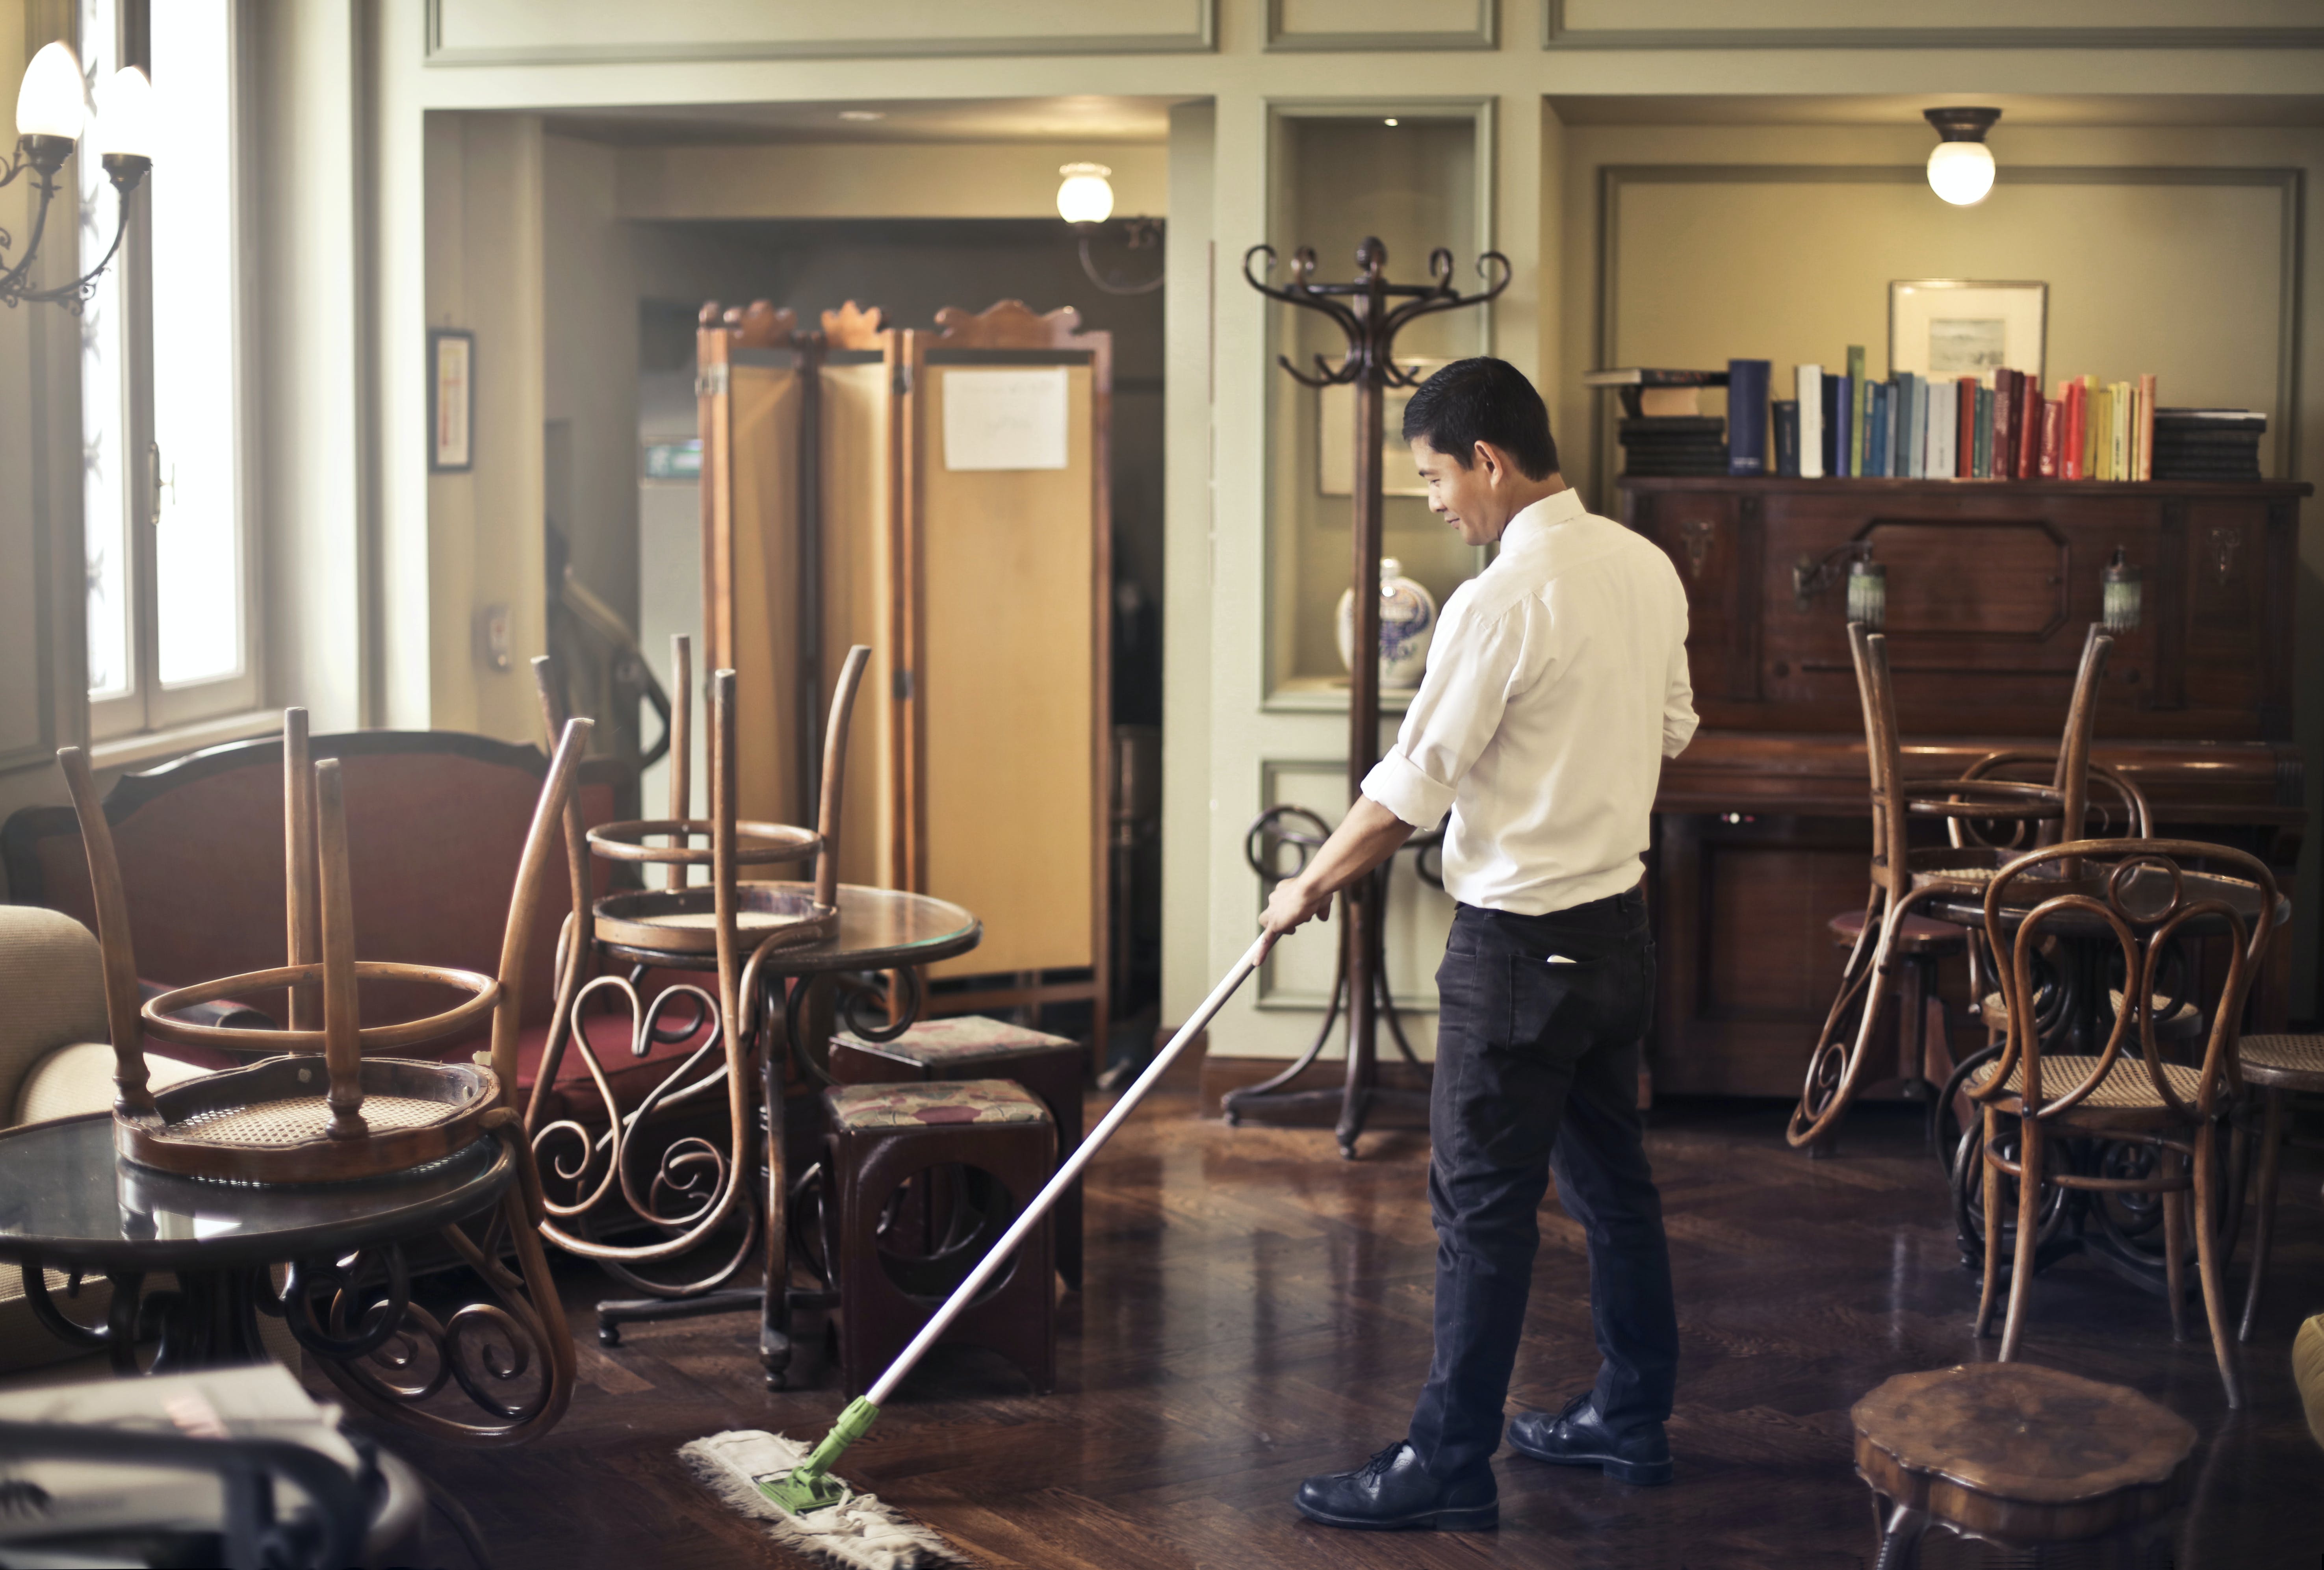 Un employé de restaurant en train de nettoyer | Source : Pexels